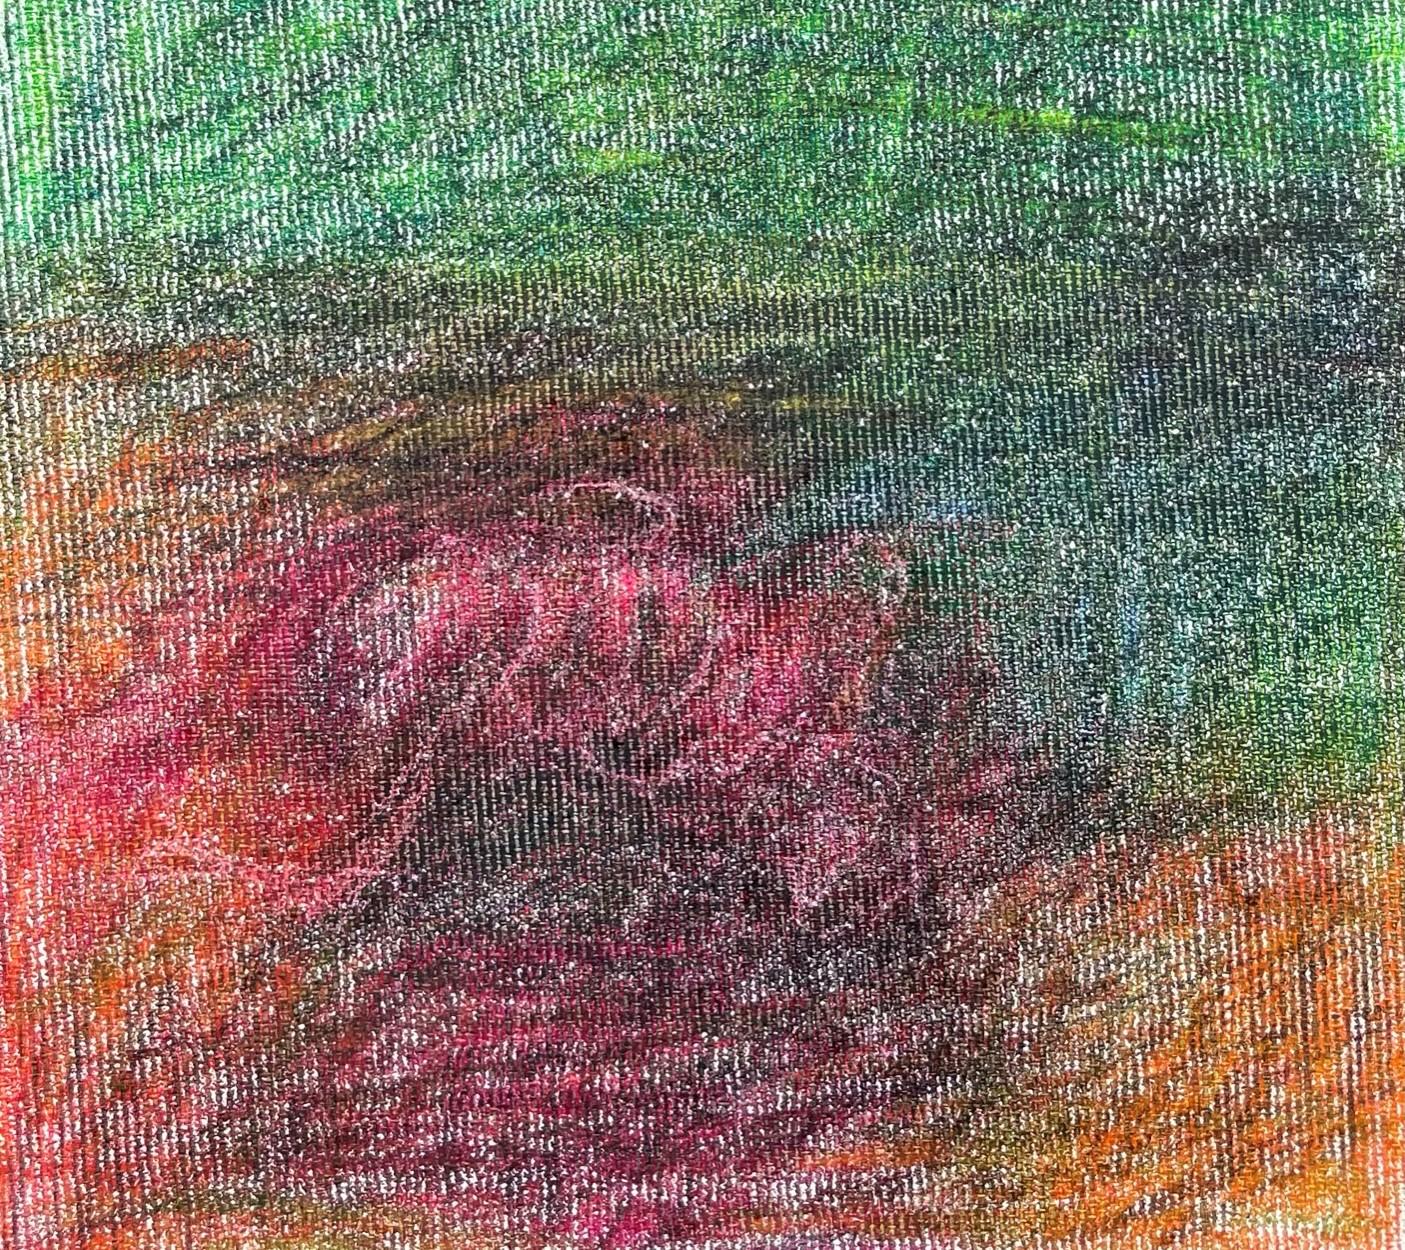 Body in the Field #4 – Grün, Rot, Zeichnung, Bleistift (Expressionismus), Art, von Zsolt Berszán